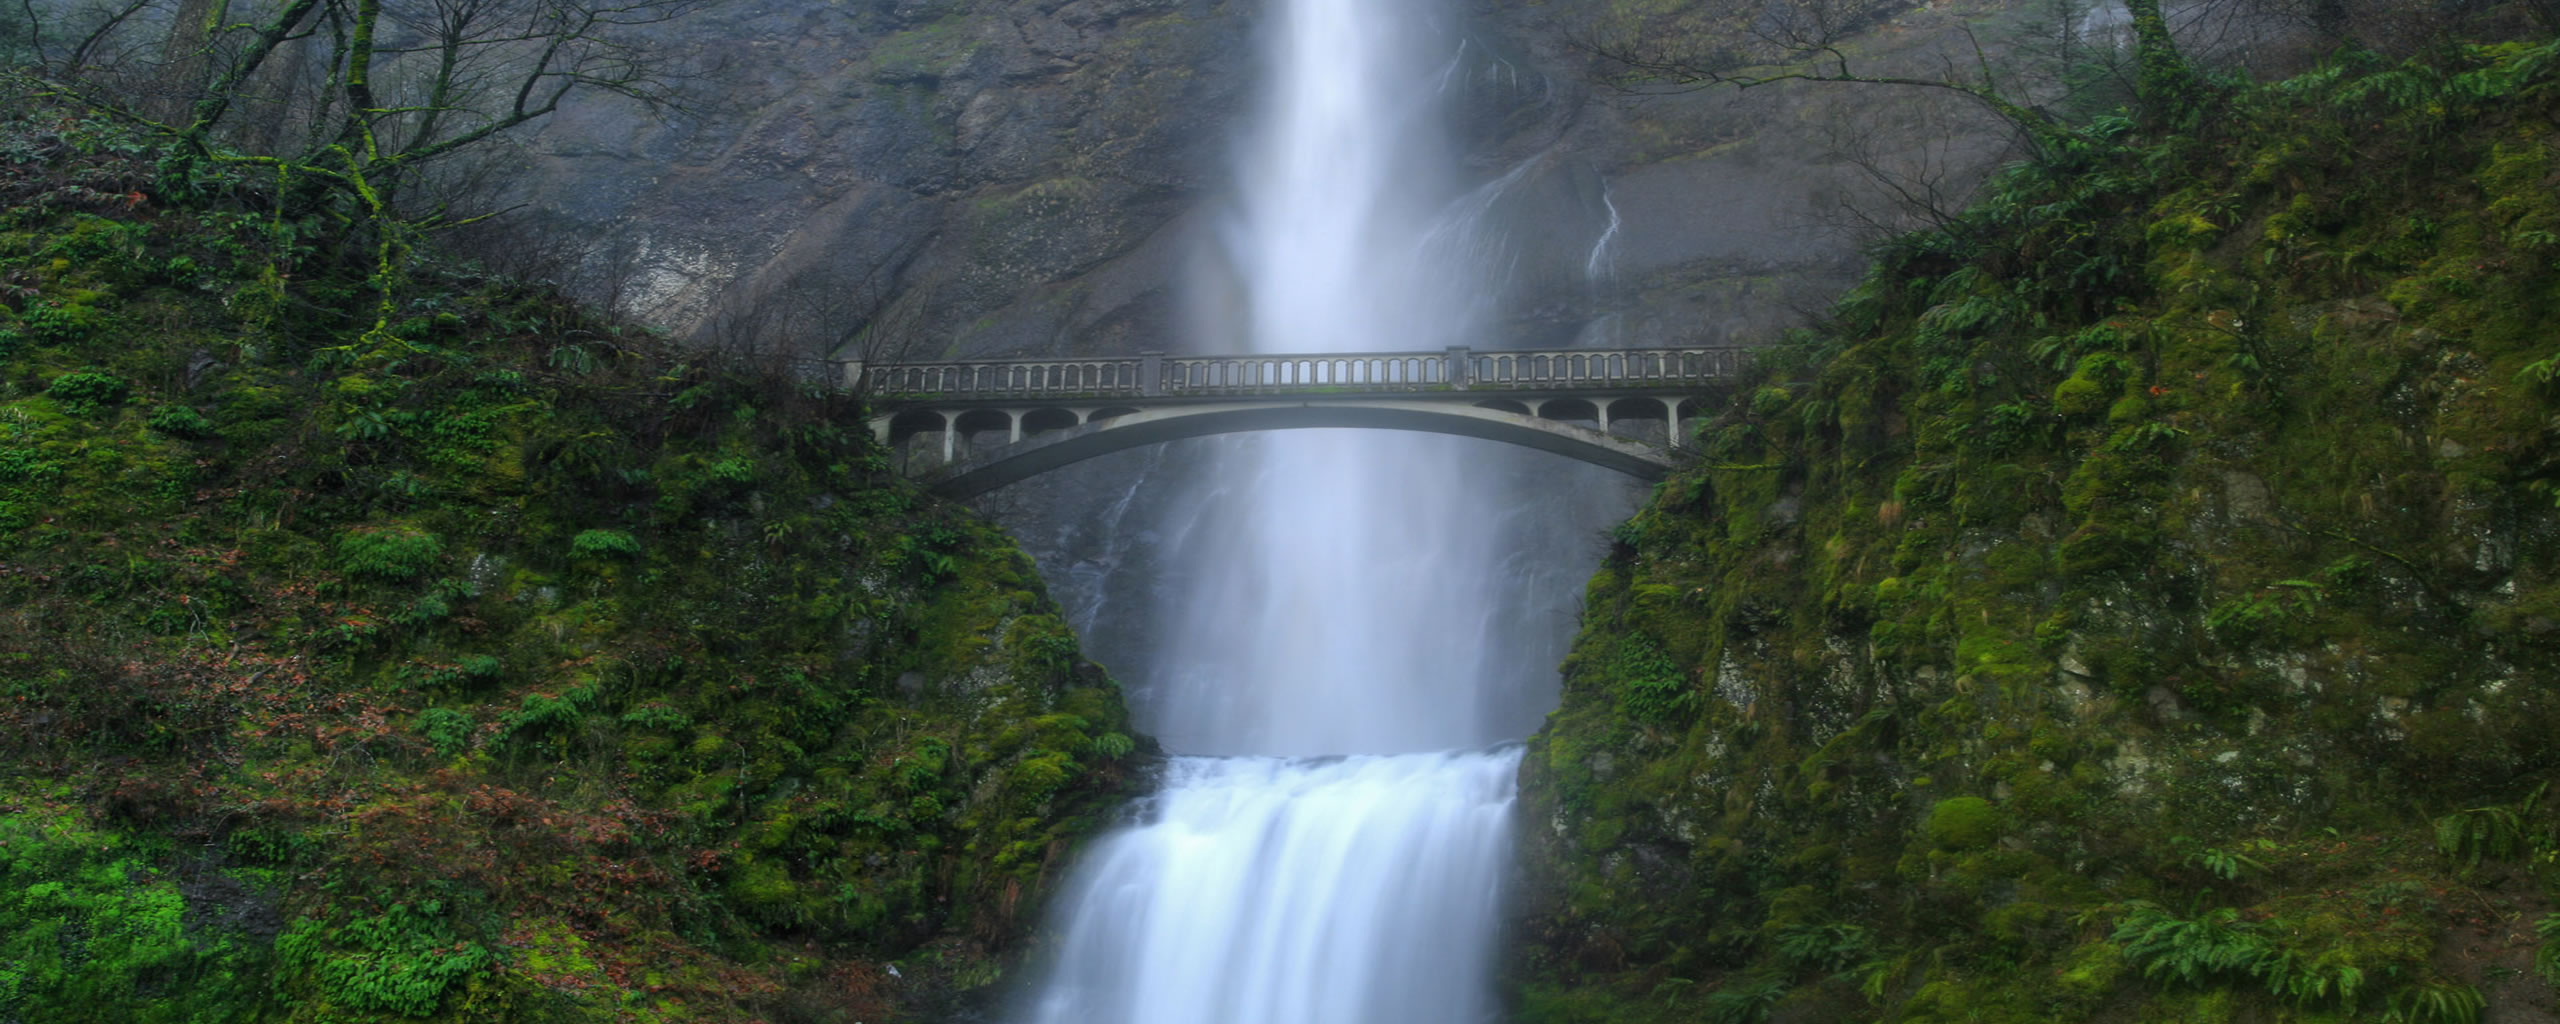 Dual Screen Wallpaper Bridges Waterfalls